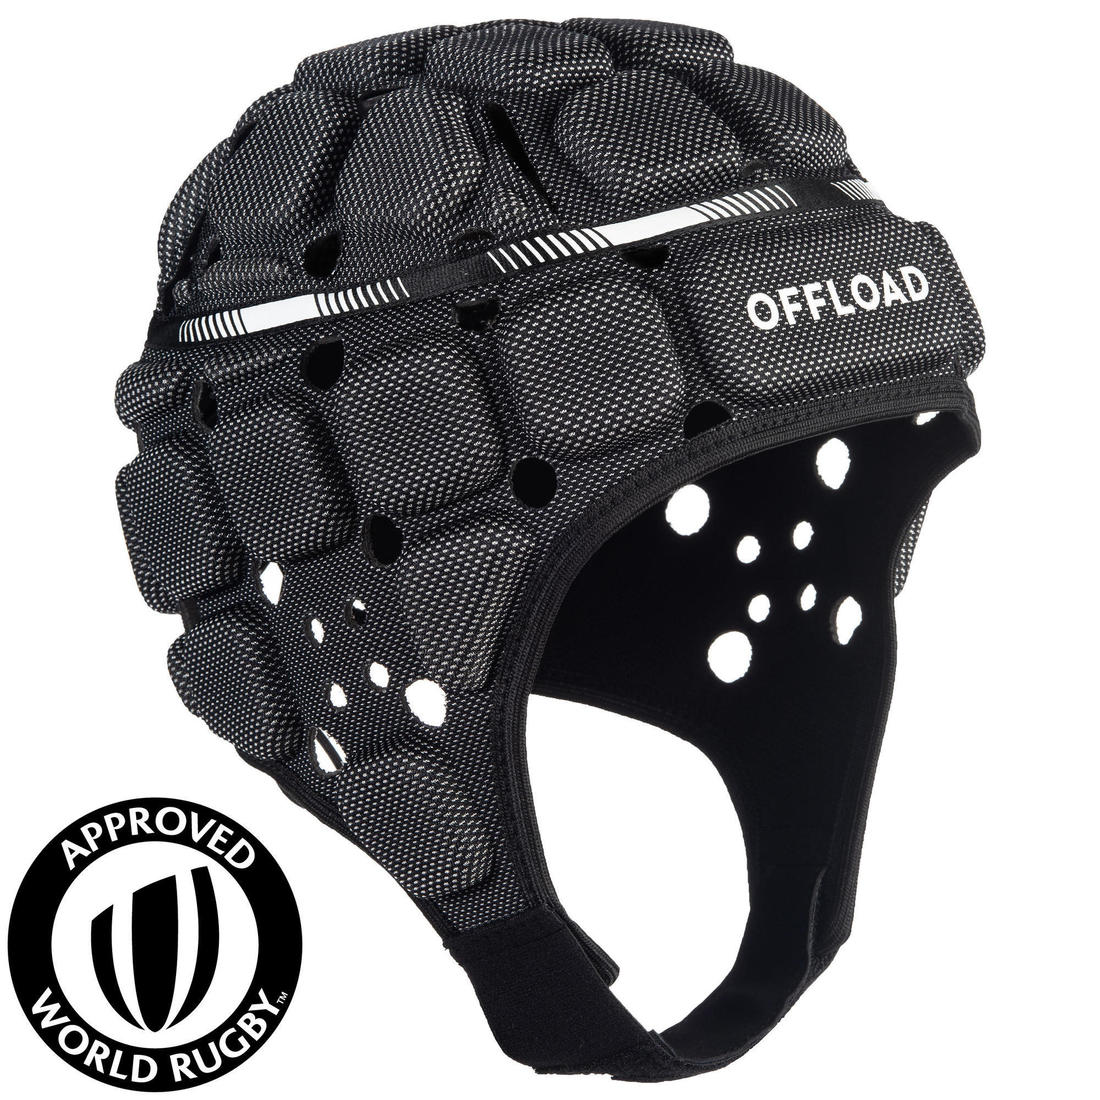 OFFLOAD (オフロード) 大人用ラグビー専用ヘッドキャップ R900 ブラック